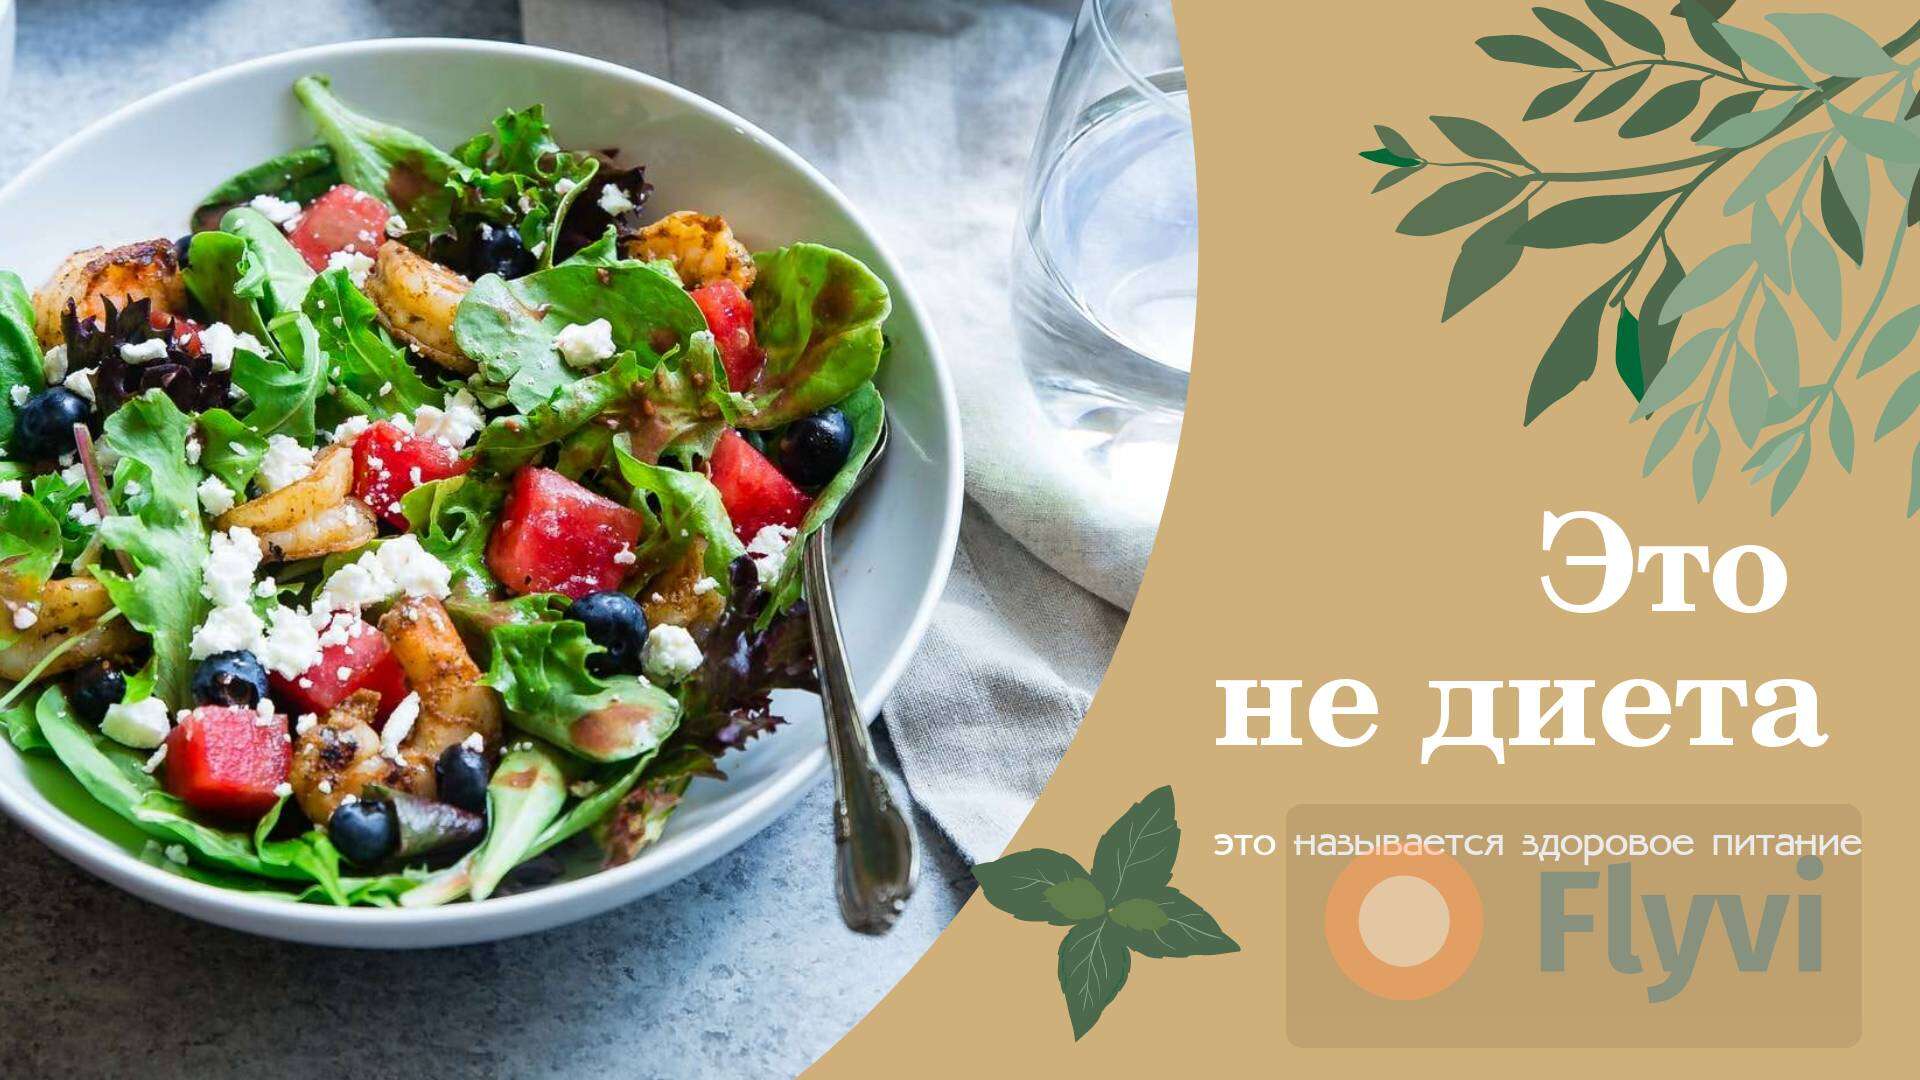 Свежий греческий салат с овощами, зеленью, сыром и оливками в готовом посте для нутрициолога Это не Диета о правильном питании